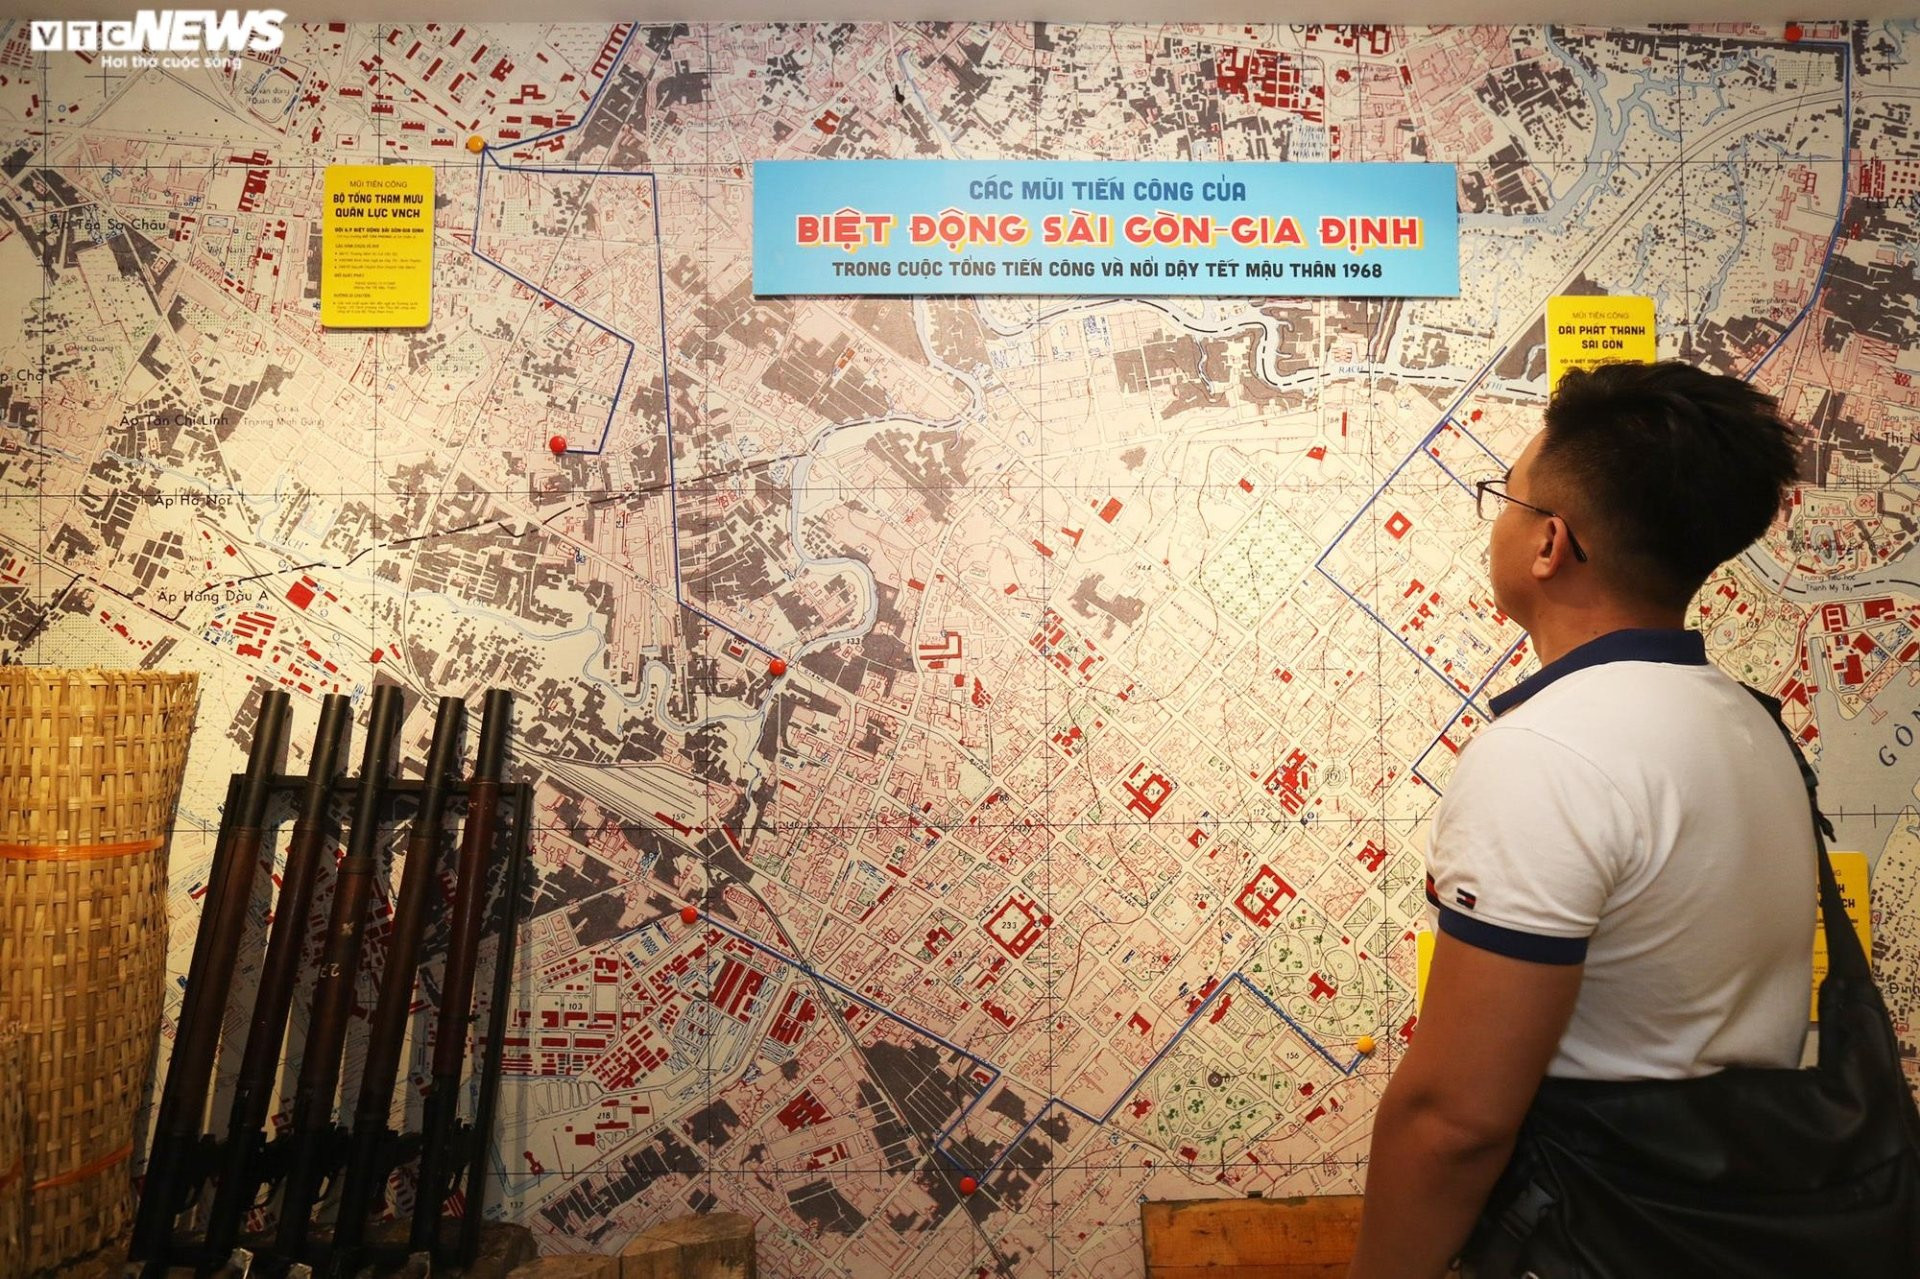 Ngắm hiện vật ở bảo tàng đầu tiên về lực lượng Biệt động Sài Gòn - Gia Định - 11